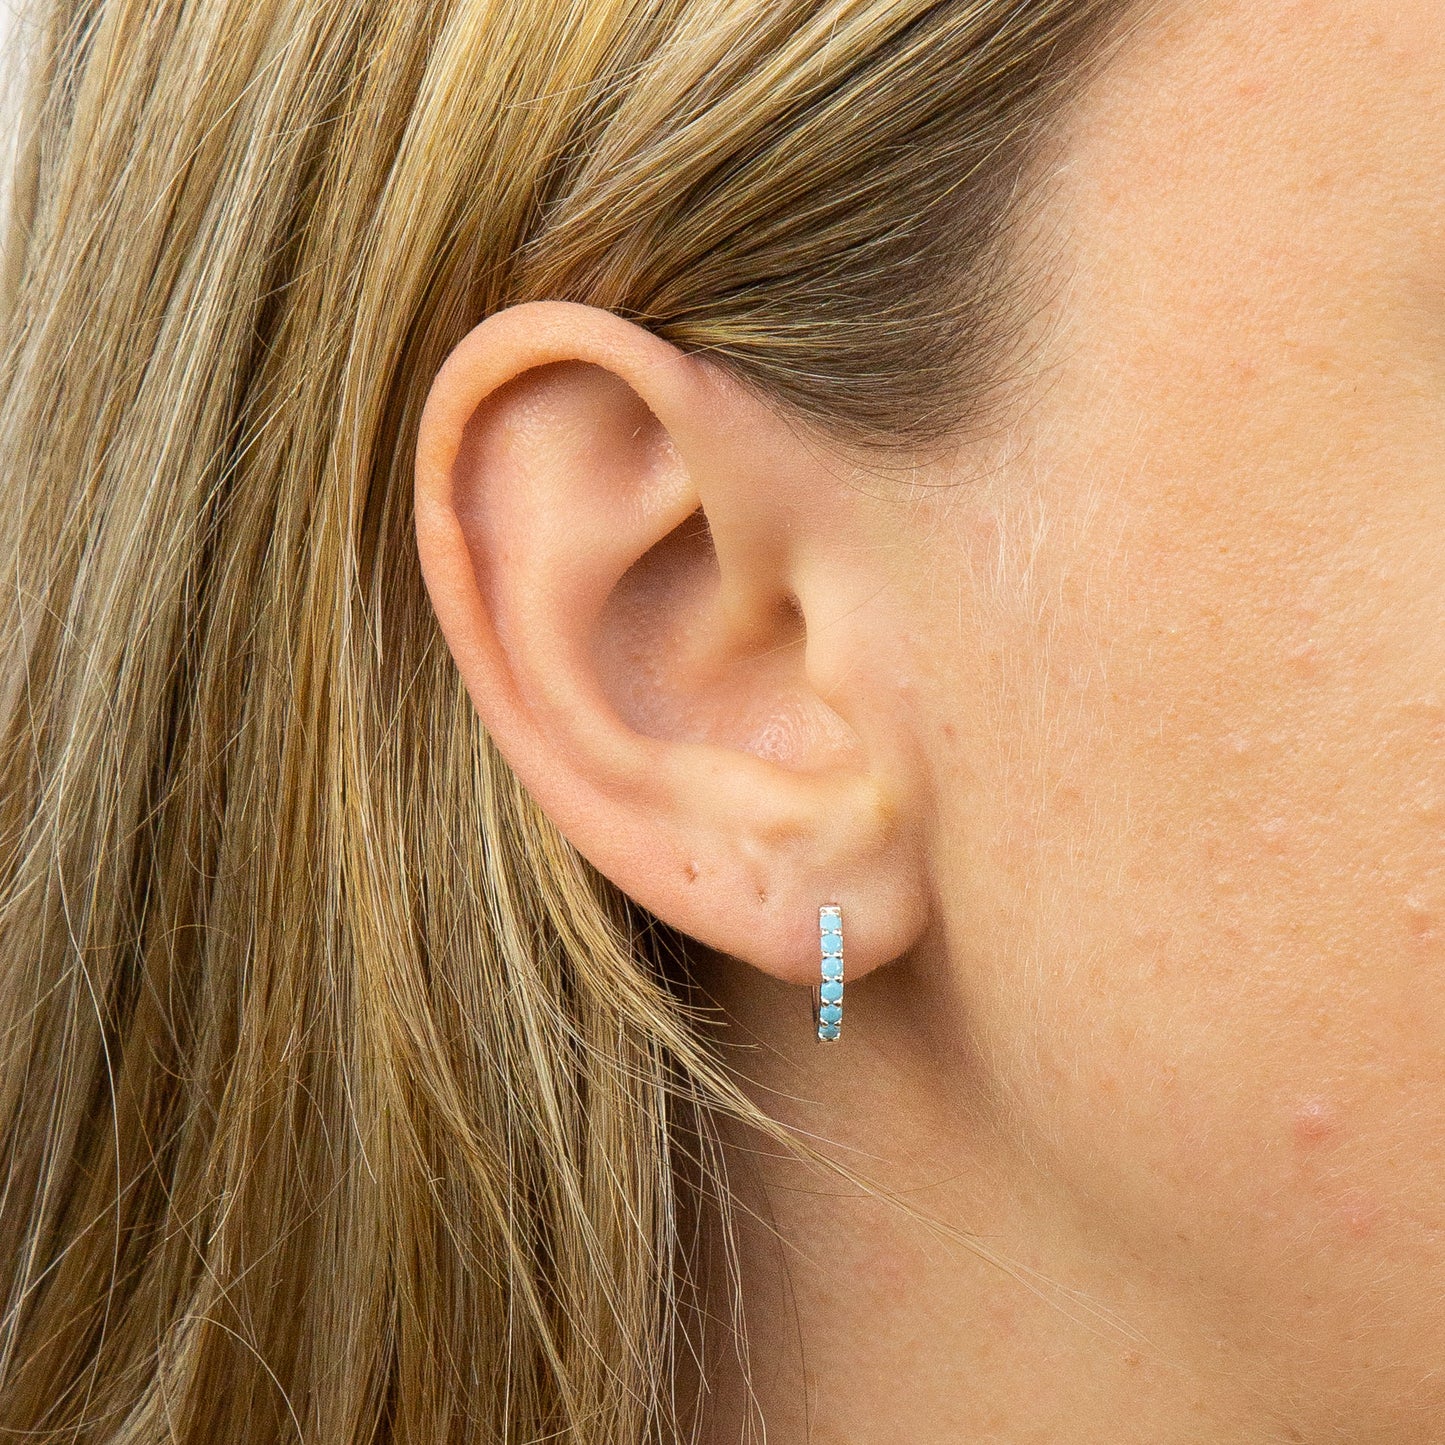 Turquoise Crystal Hoop Earrings